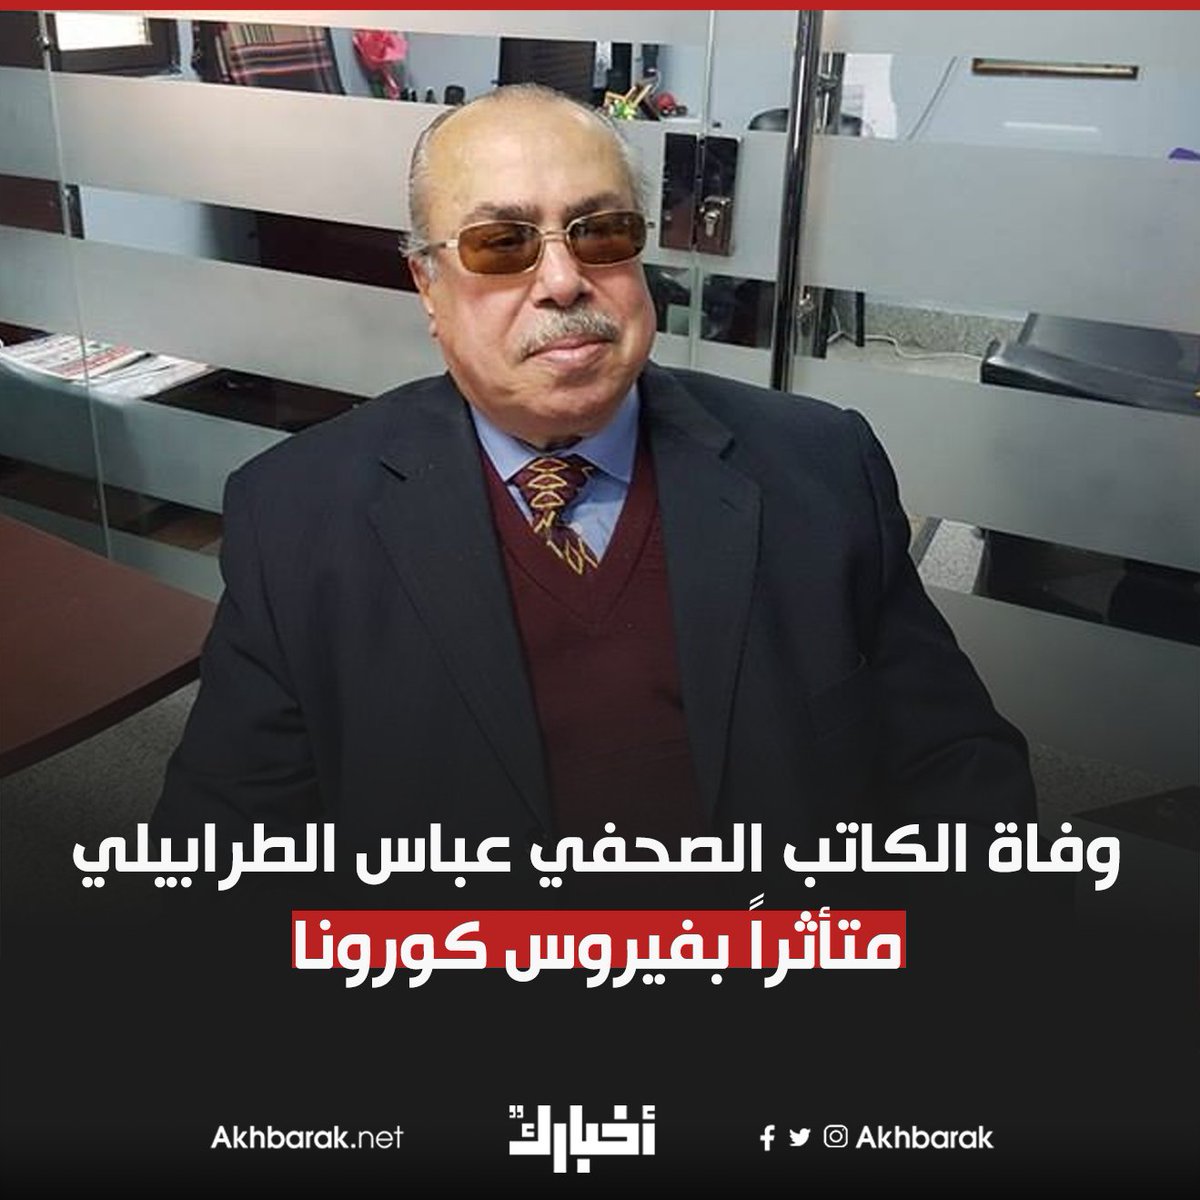 وفاة الكاتب الصحفي عباس الطرابيلي متأثراً بفيروس كورونا المصدر المصري اليوم